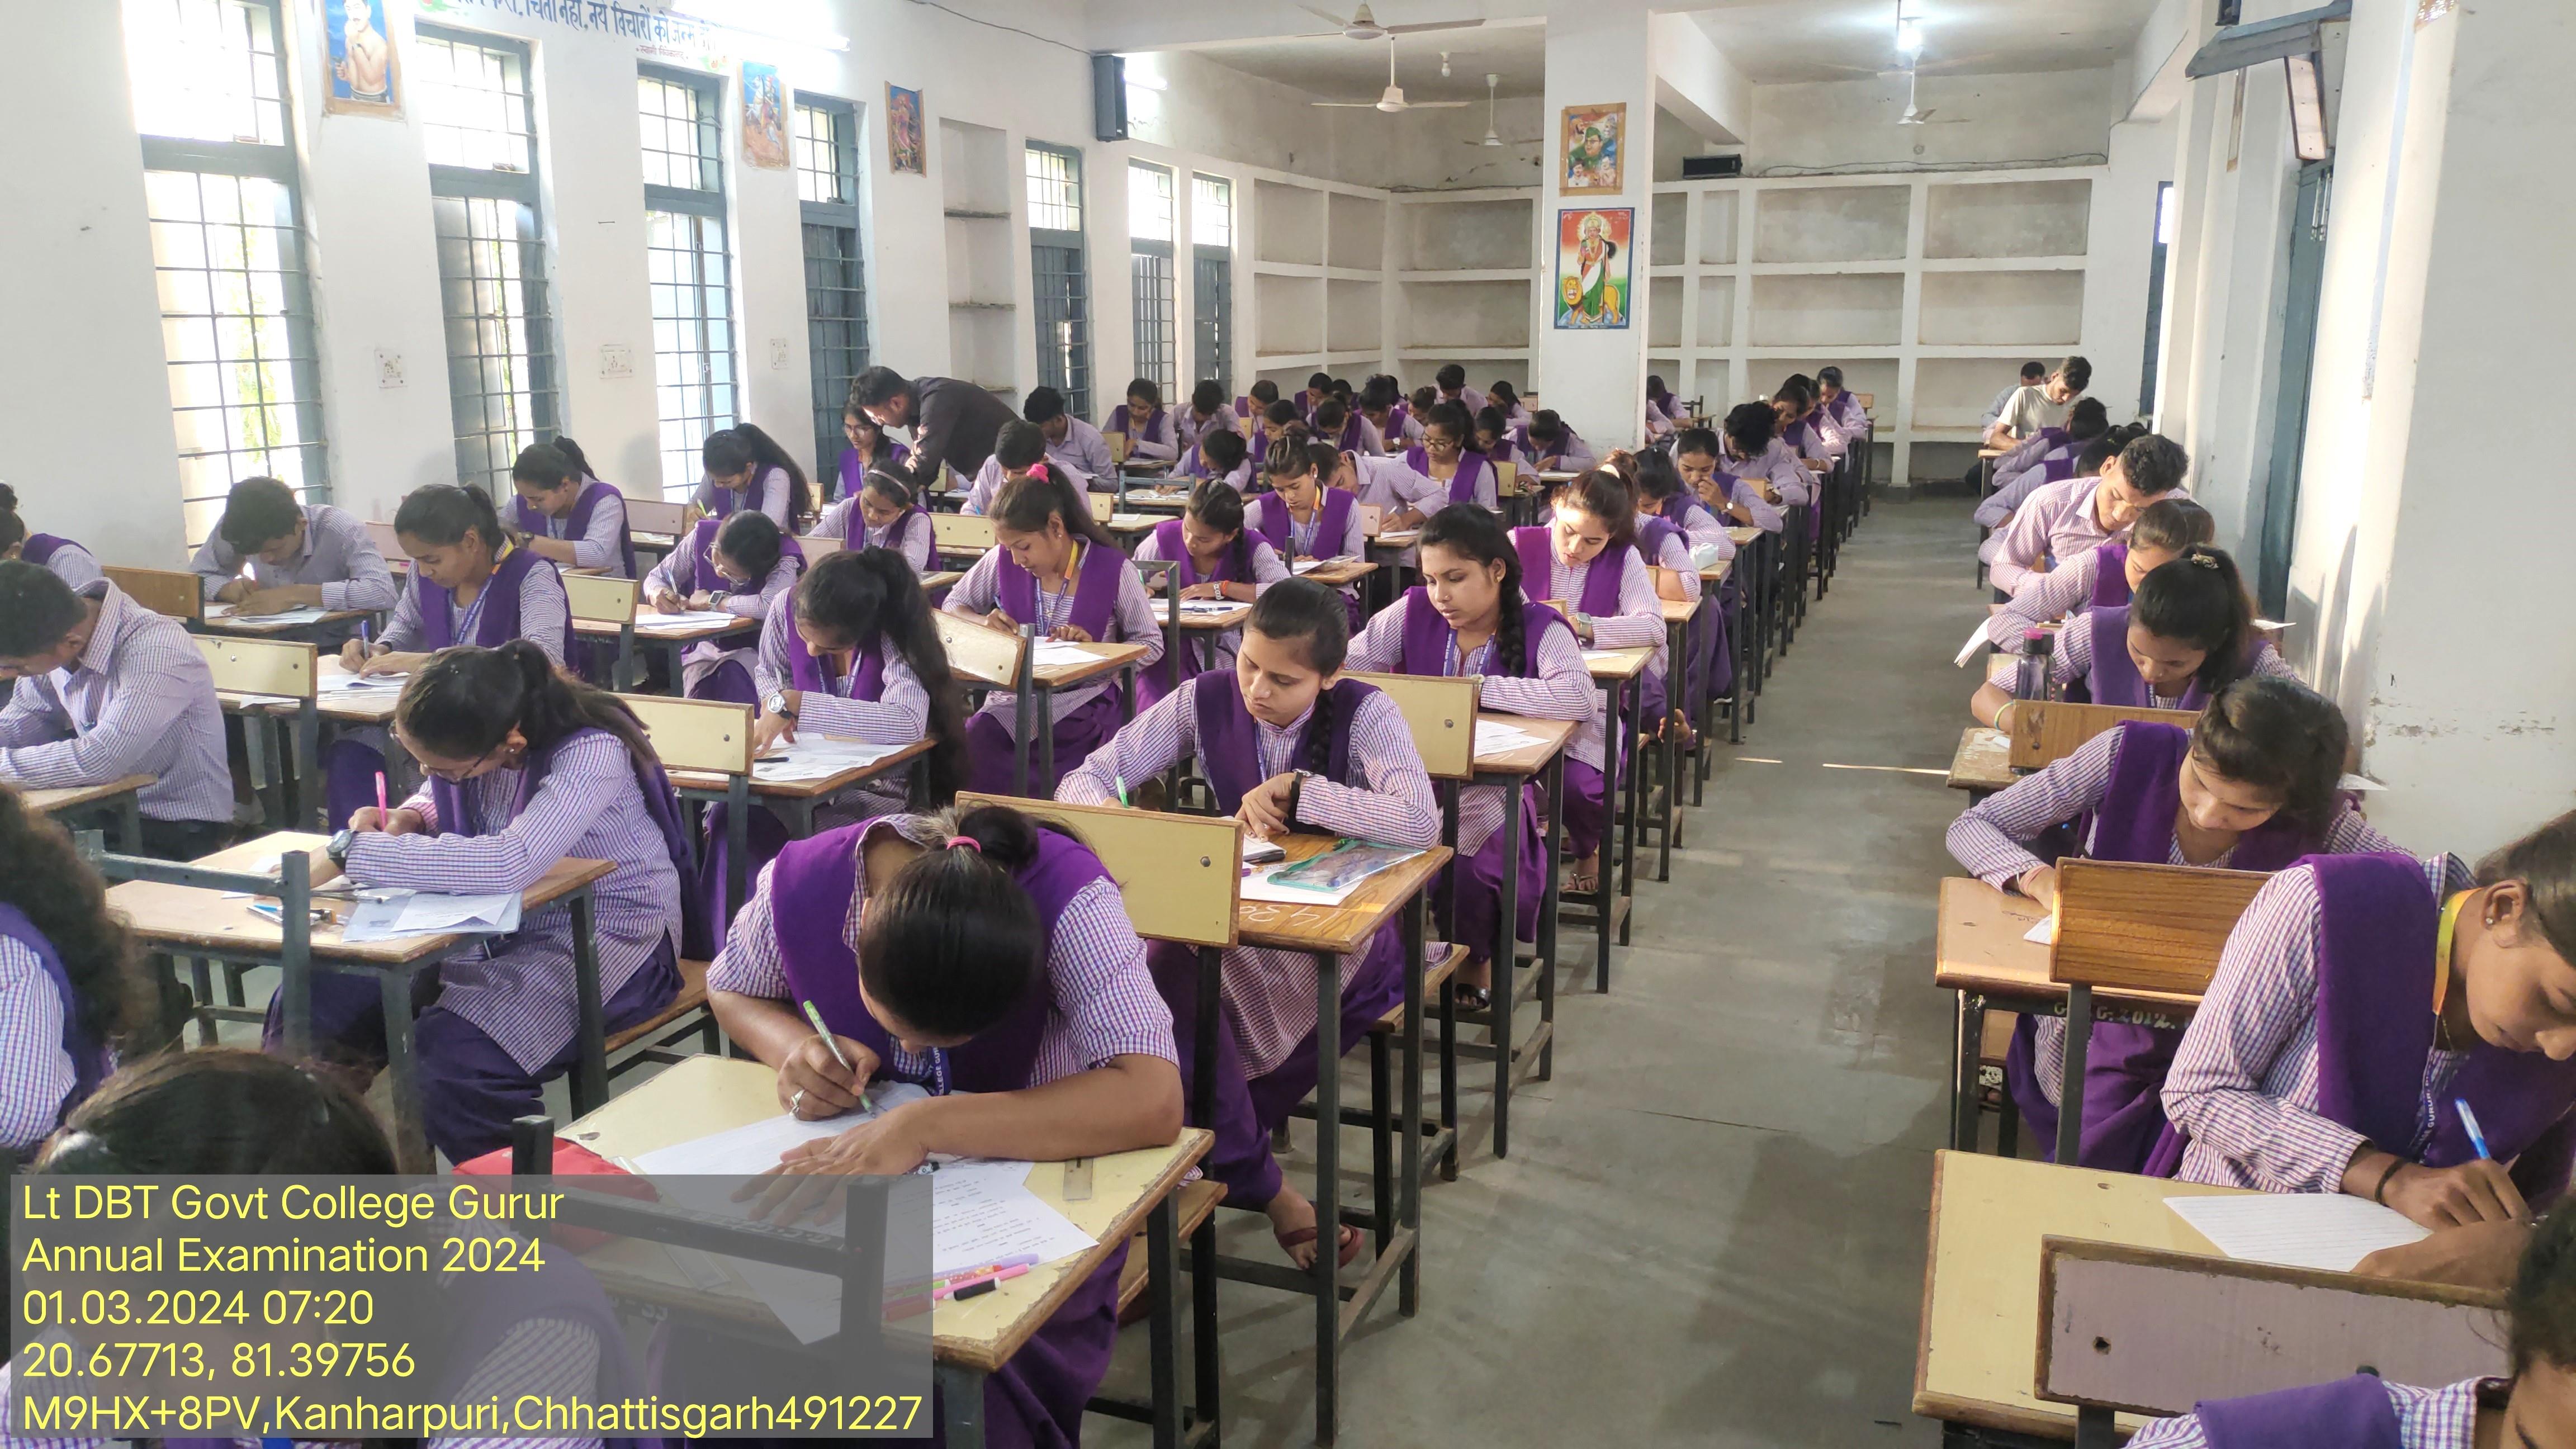 Annual Exam 2024- Govet college Gurur